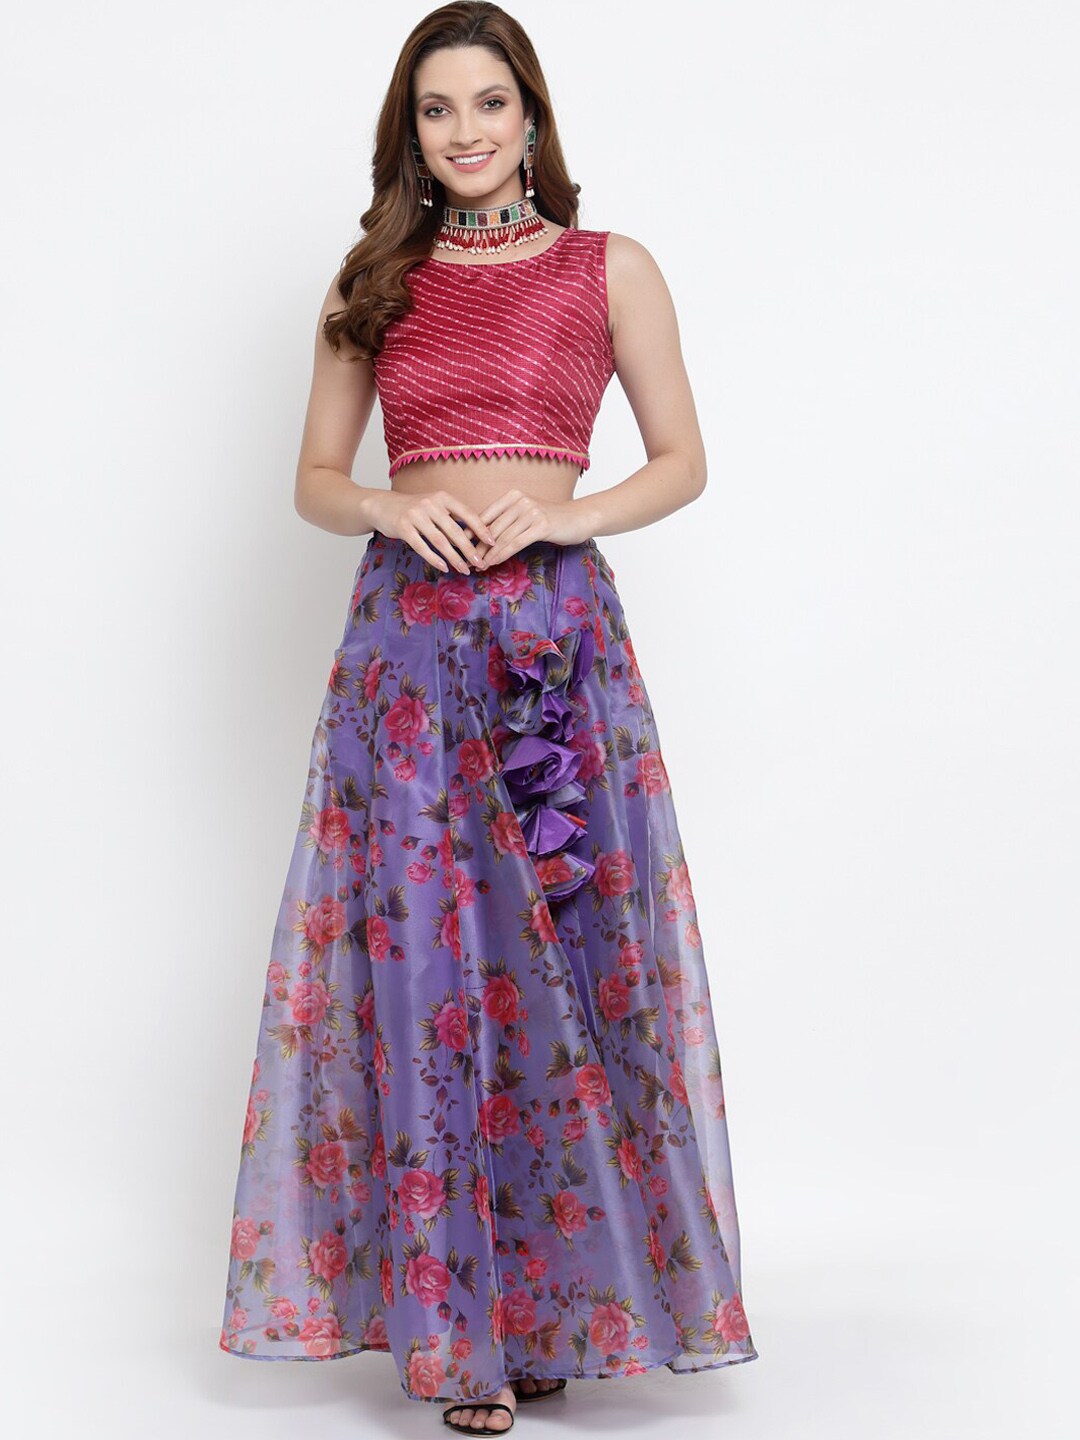 NEUDIS Women Purple & Maroon Printed Organza Flared Maxi Lehenga Skirt With Crop Top Price in India